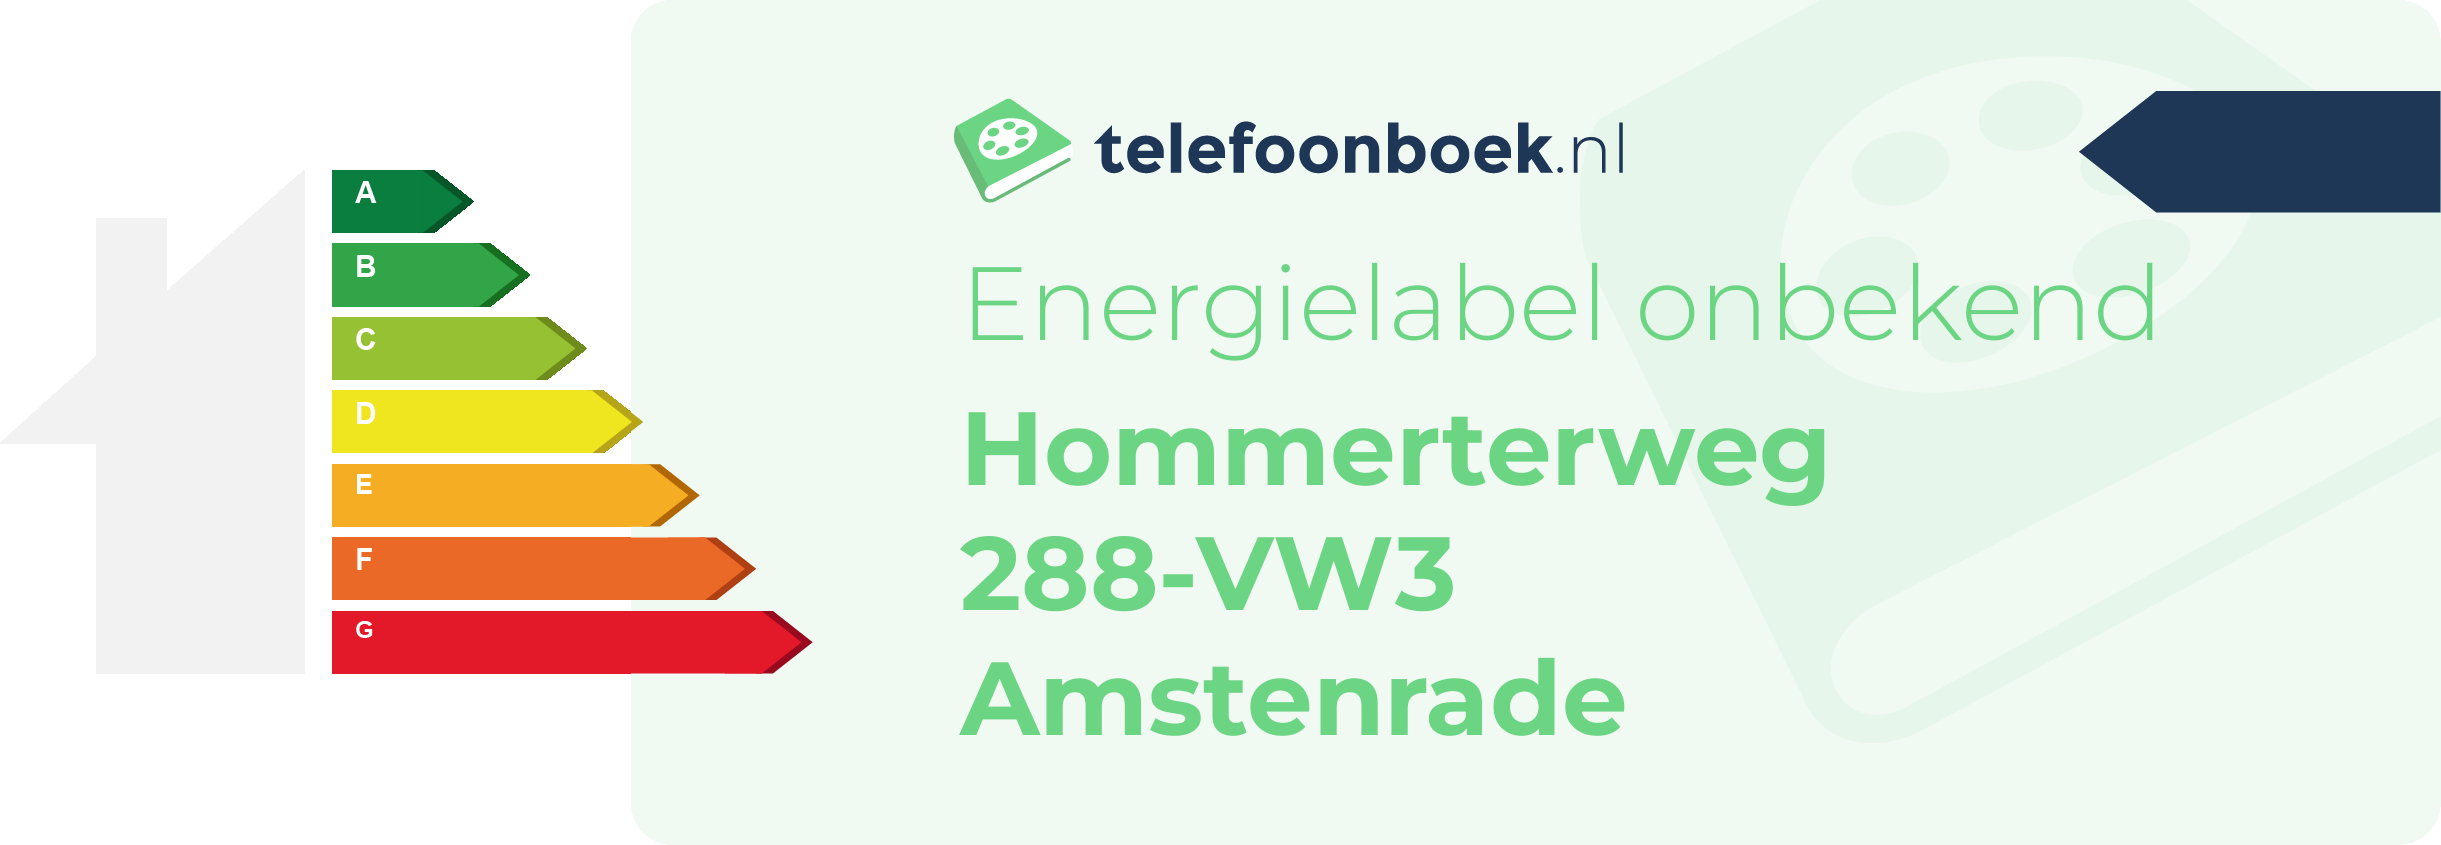 Energielabel Hommerterweg 288-VW3 Amstenrade